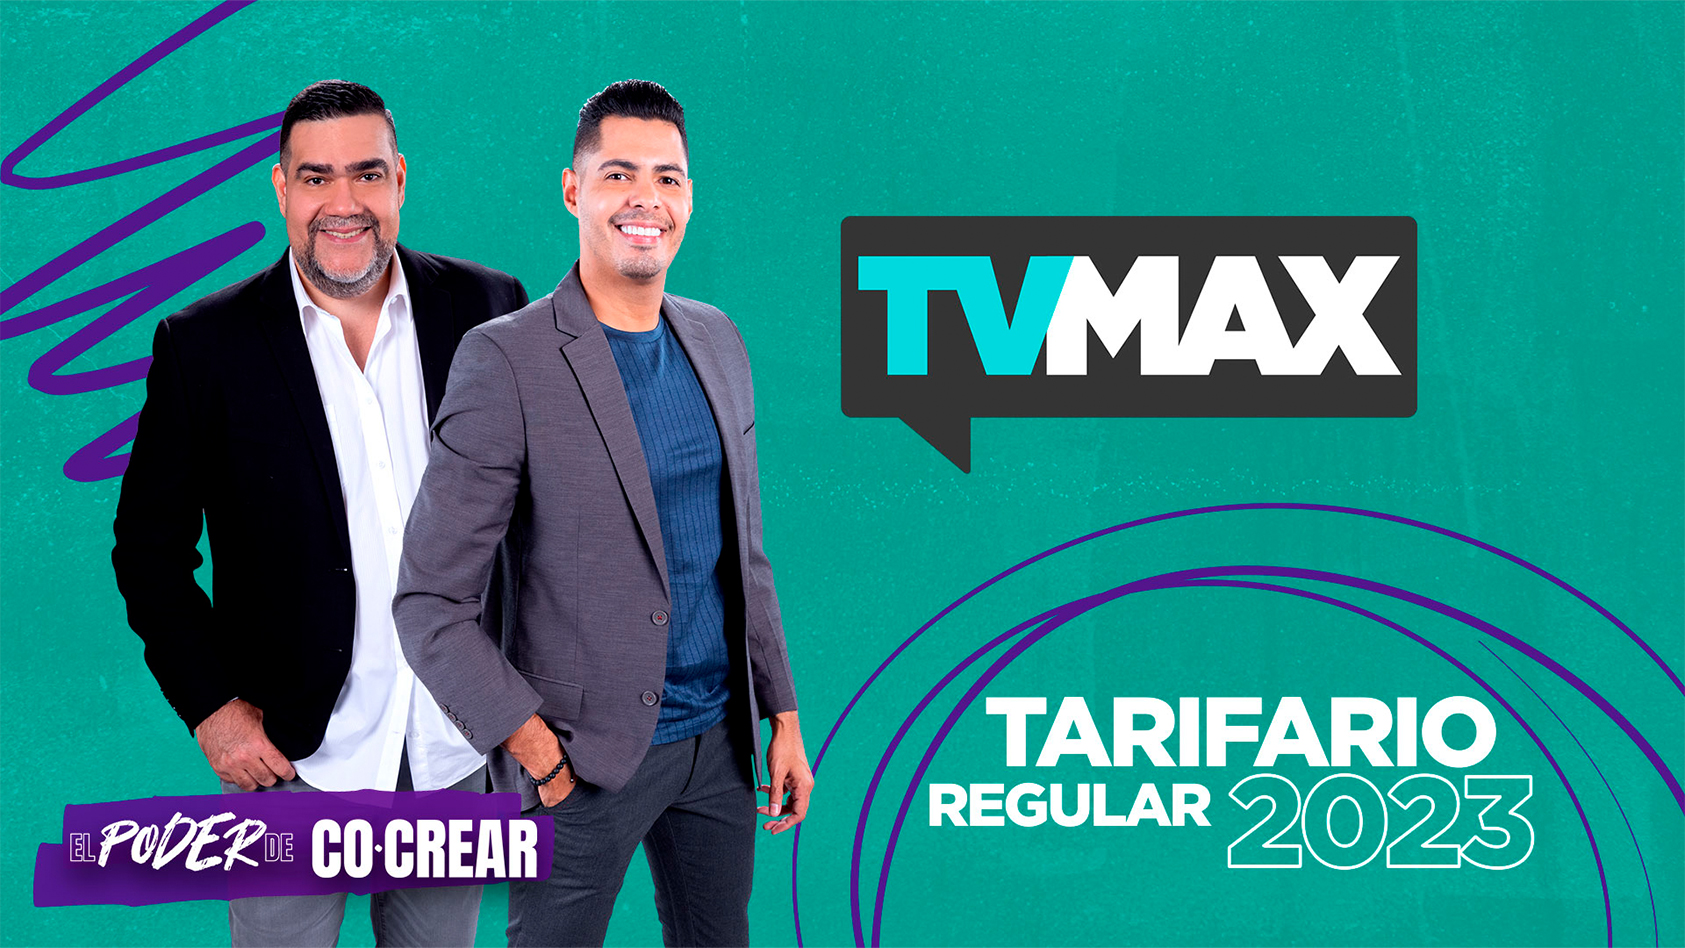 TVMax Regular 2023